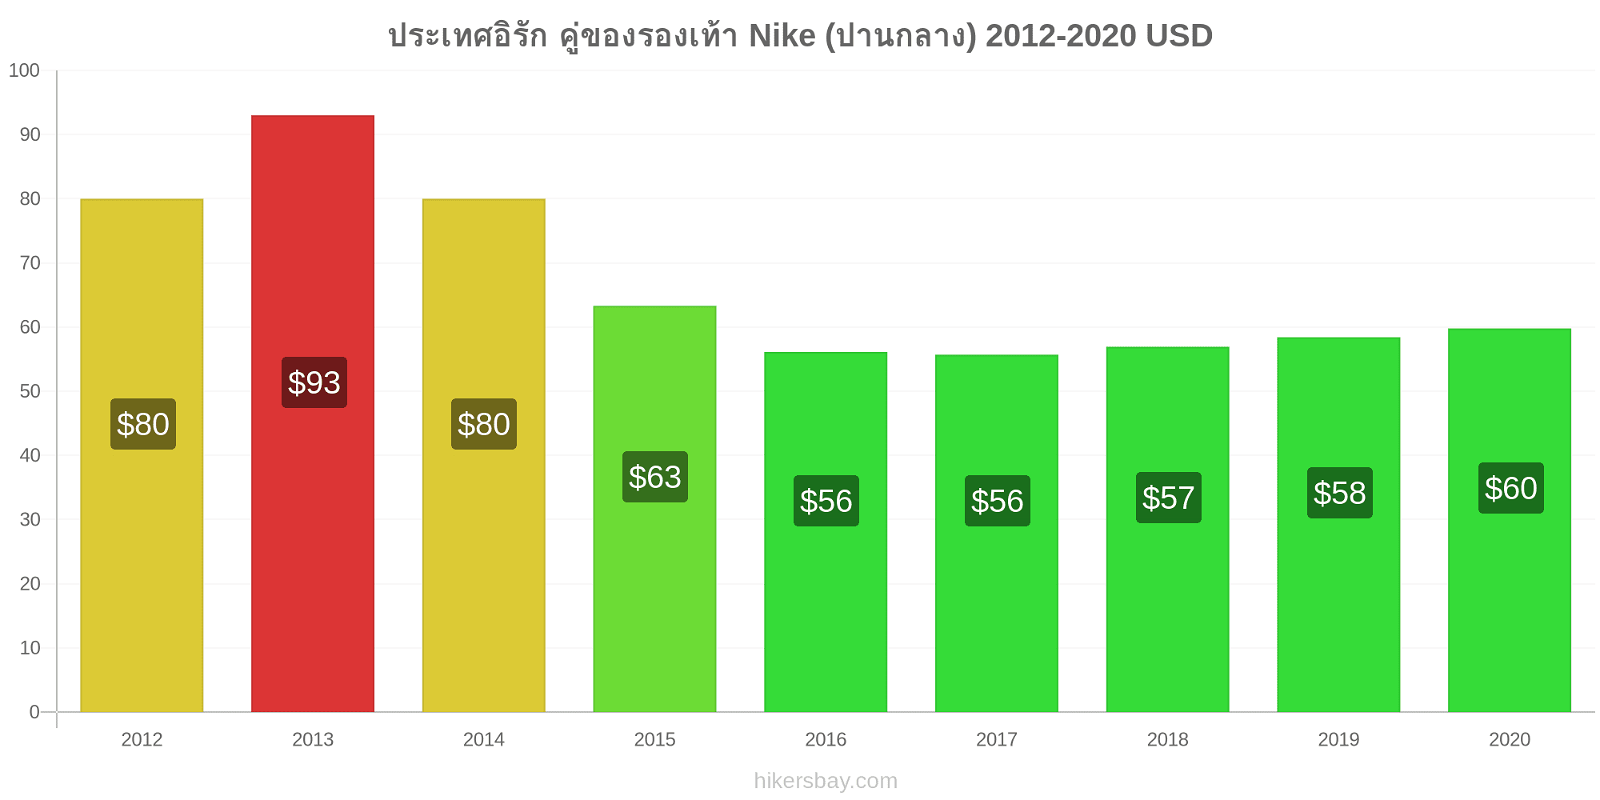 ประเทศอิรัก การเปลี่ยนแปลงราคา คู่ของรองเท้า Nike (ปานกลาง) hikersbay.com